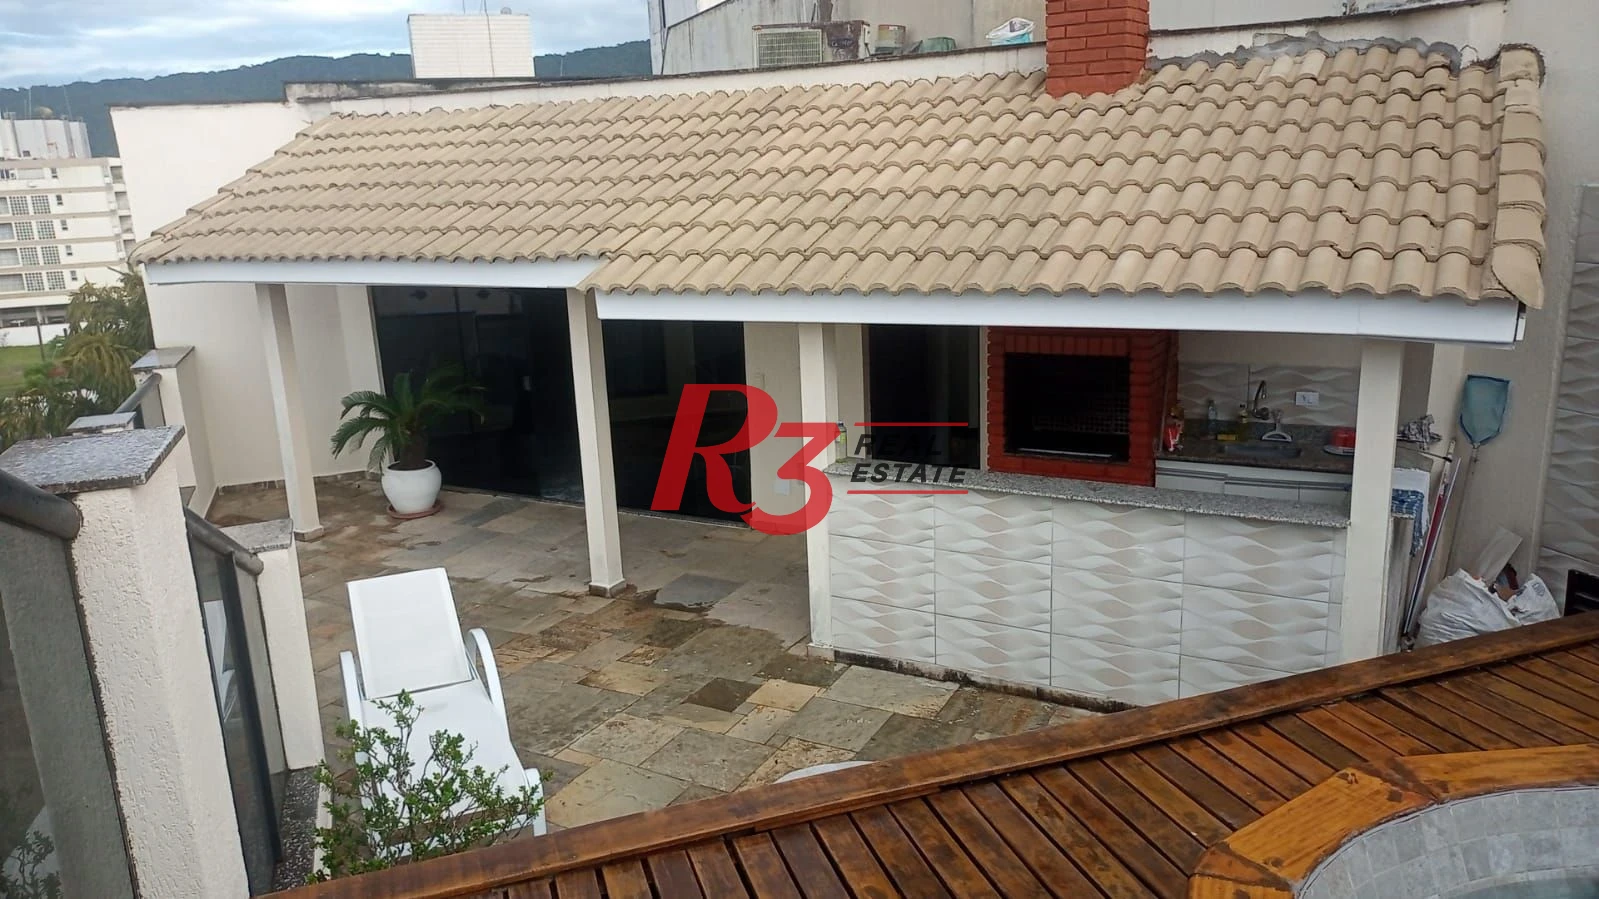 Cobertura com 3 dormitórios à venda, 220 m² - Parque Enseada - Guarujá/SP